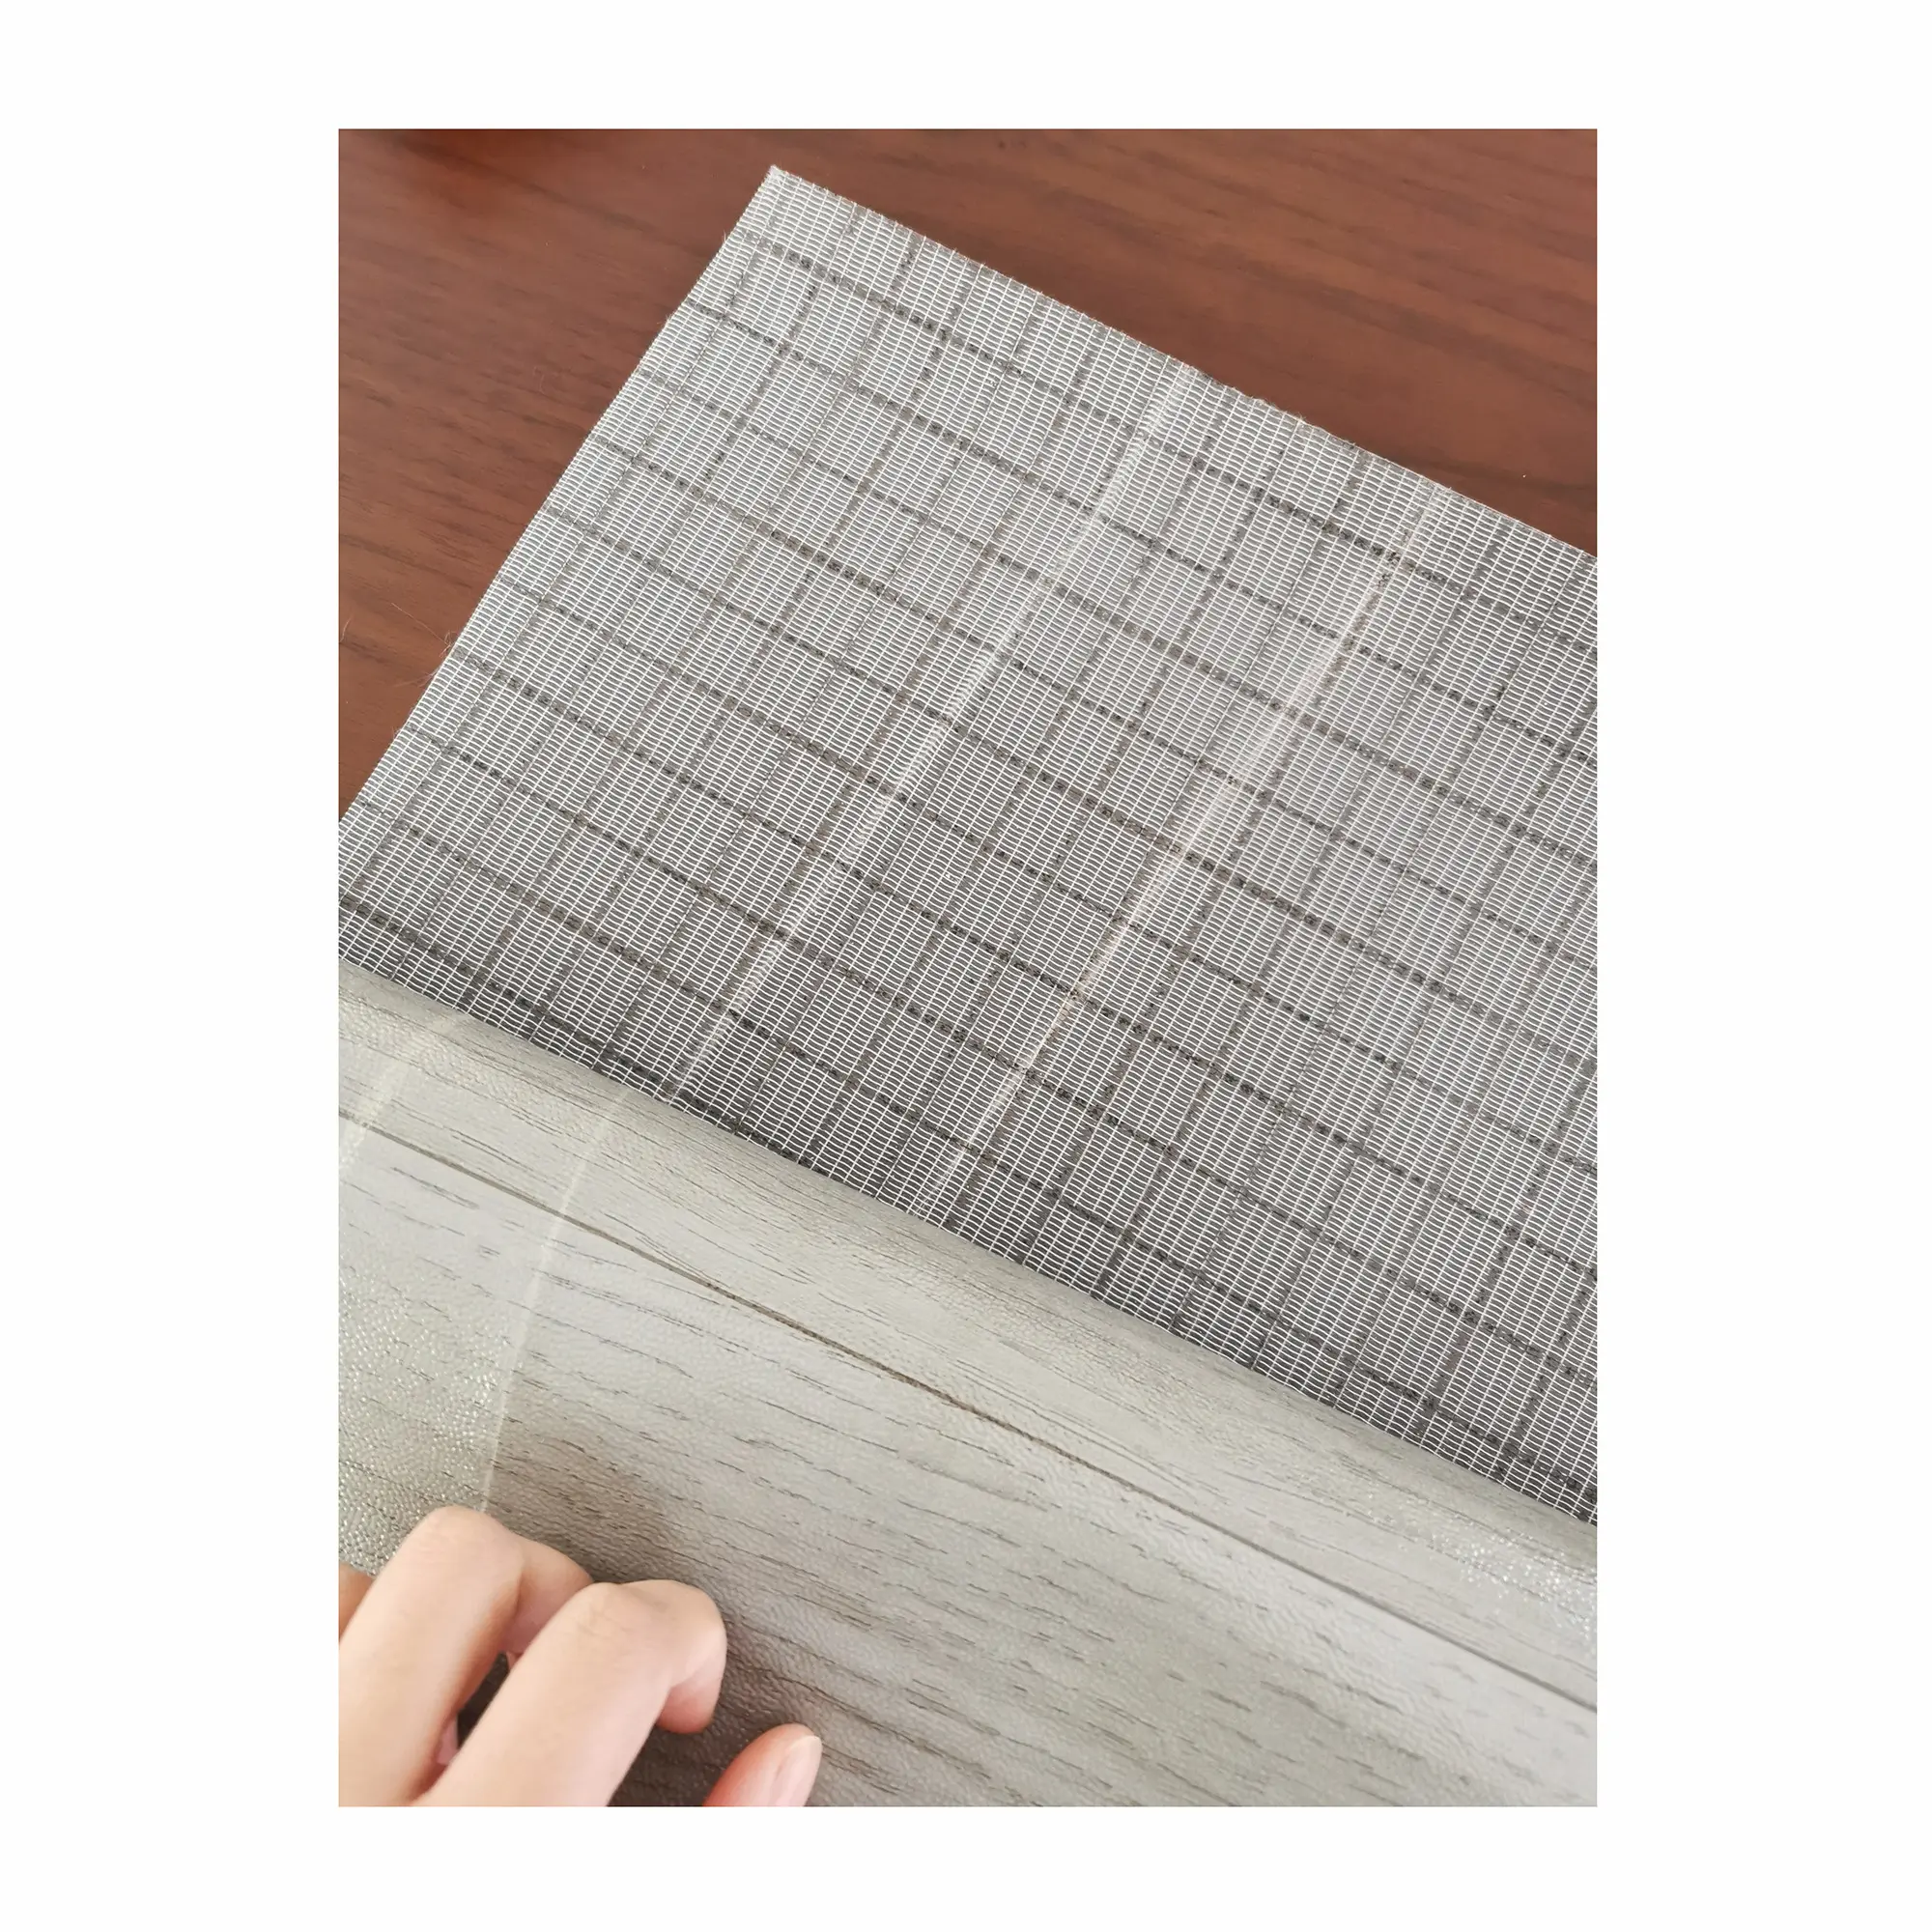 PVC-Vinyl-Linoleum-Boden planke Anti-Rutsch-Schallschutz Homogene Rollen PVC-Vinyl rolle für die Labors chule